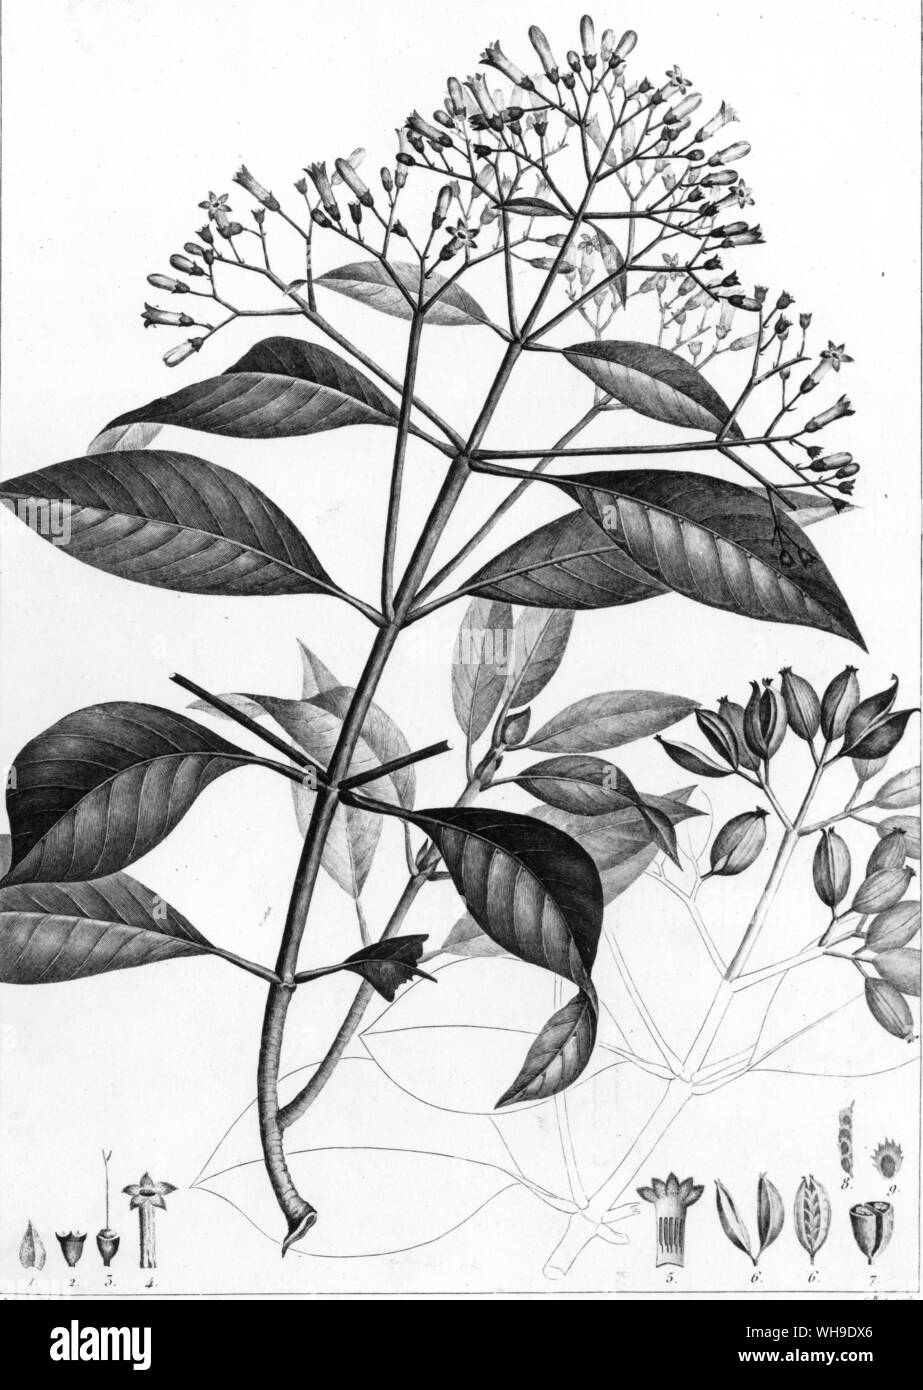 Mutisa grandiflora da Plantes equinoxiales da Humboldt e Bonpland, e Don José Celestino Mutis, per cui il genere è stato chiamato Foto Stock